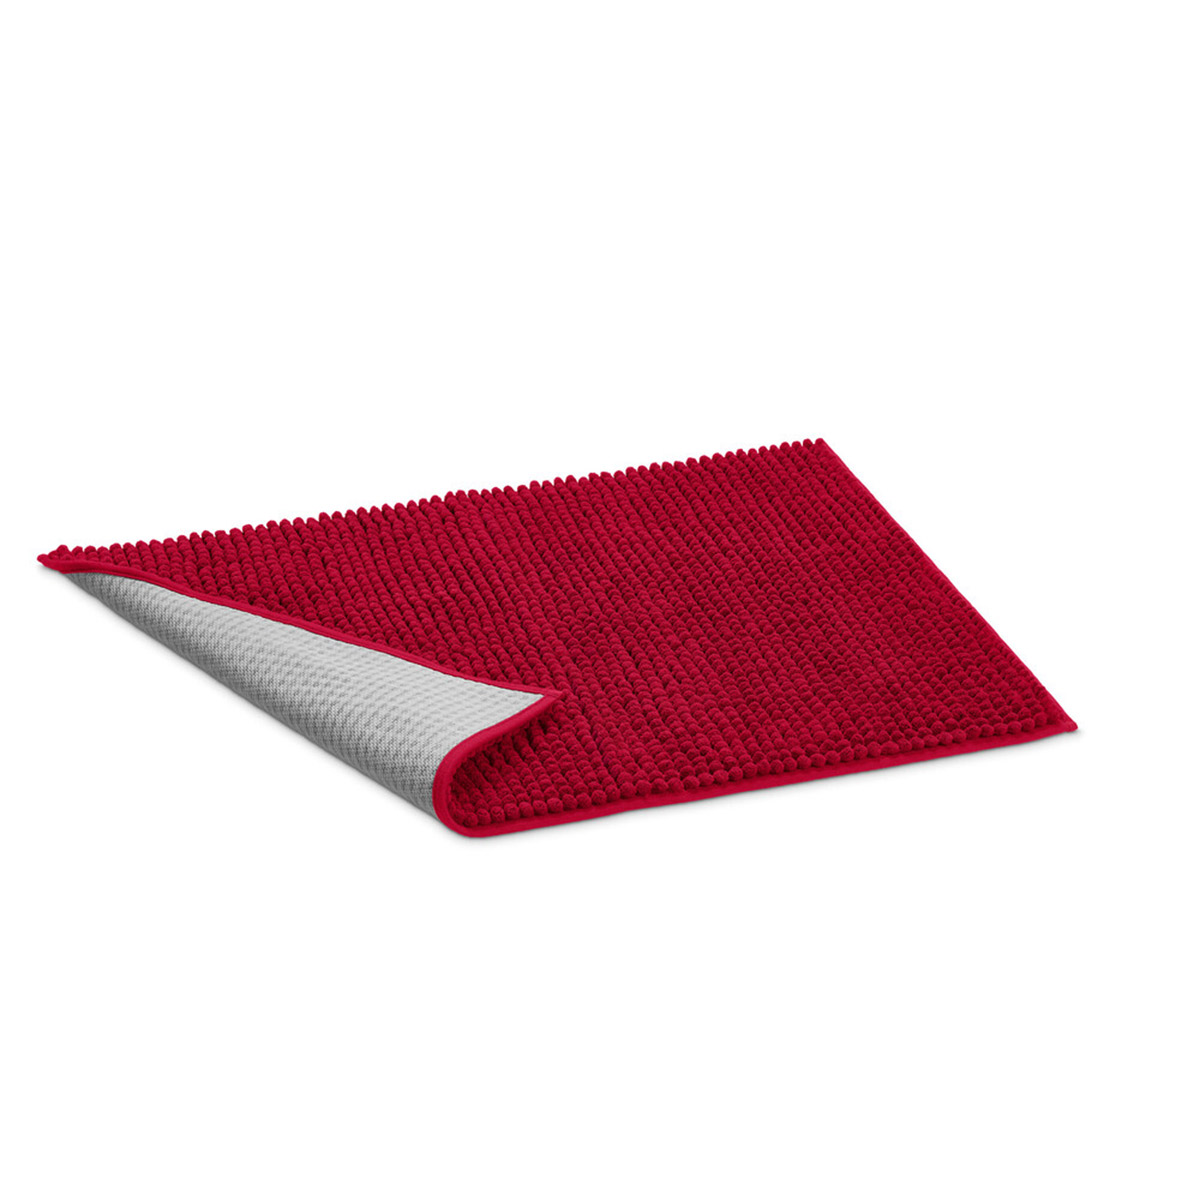 Hunter Waterloo rohož zachycující nečistoty, červená S 60 × 40 cm